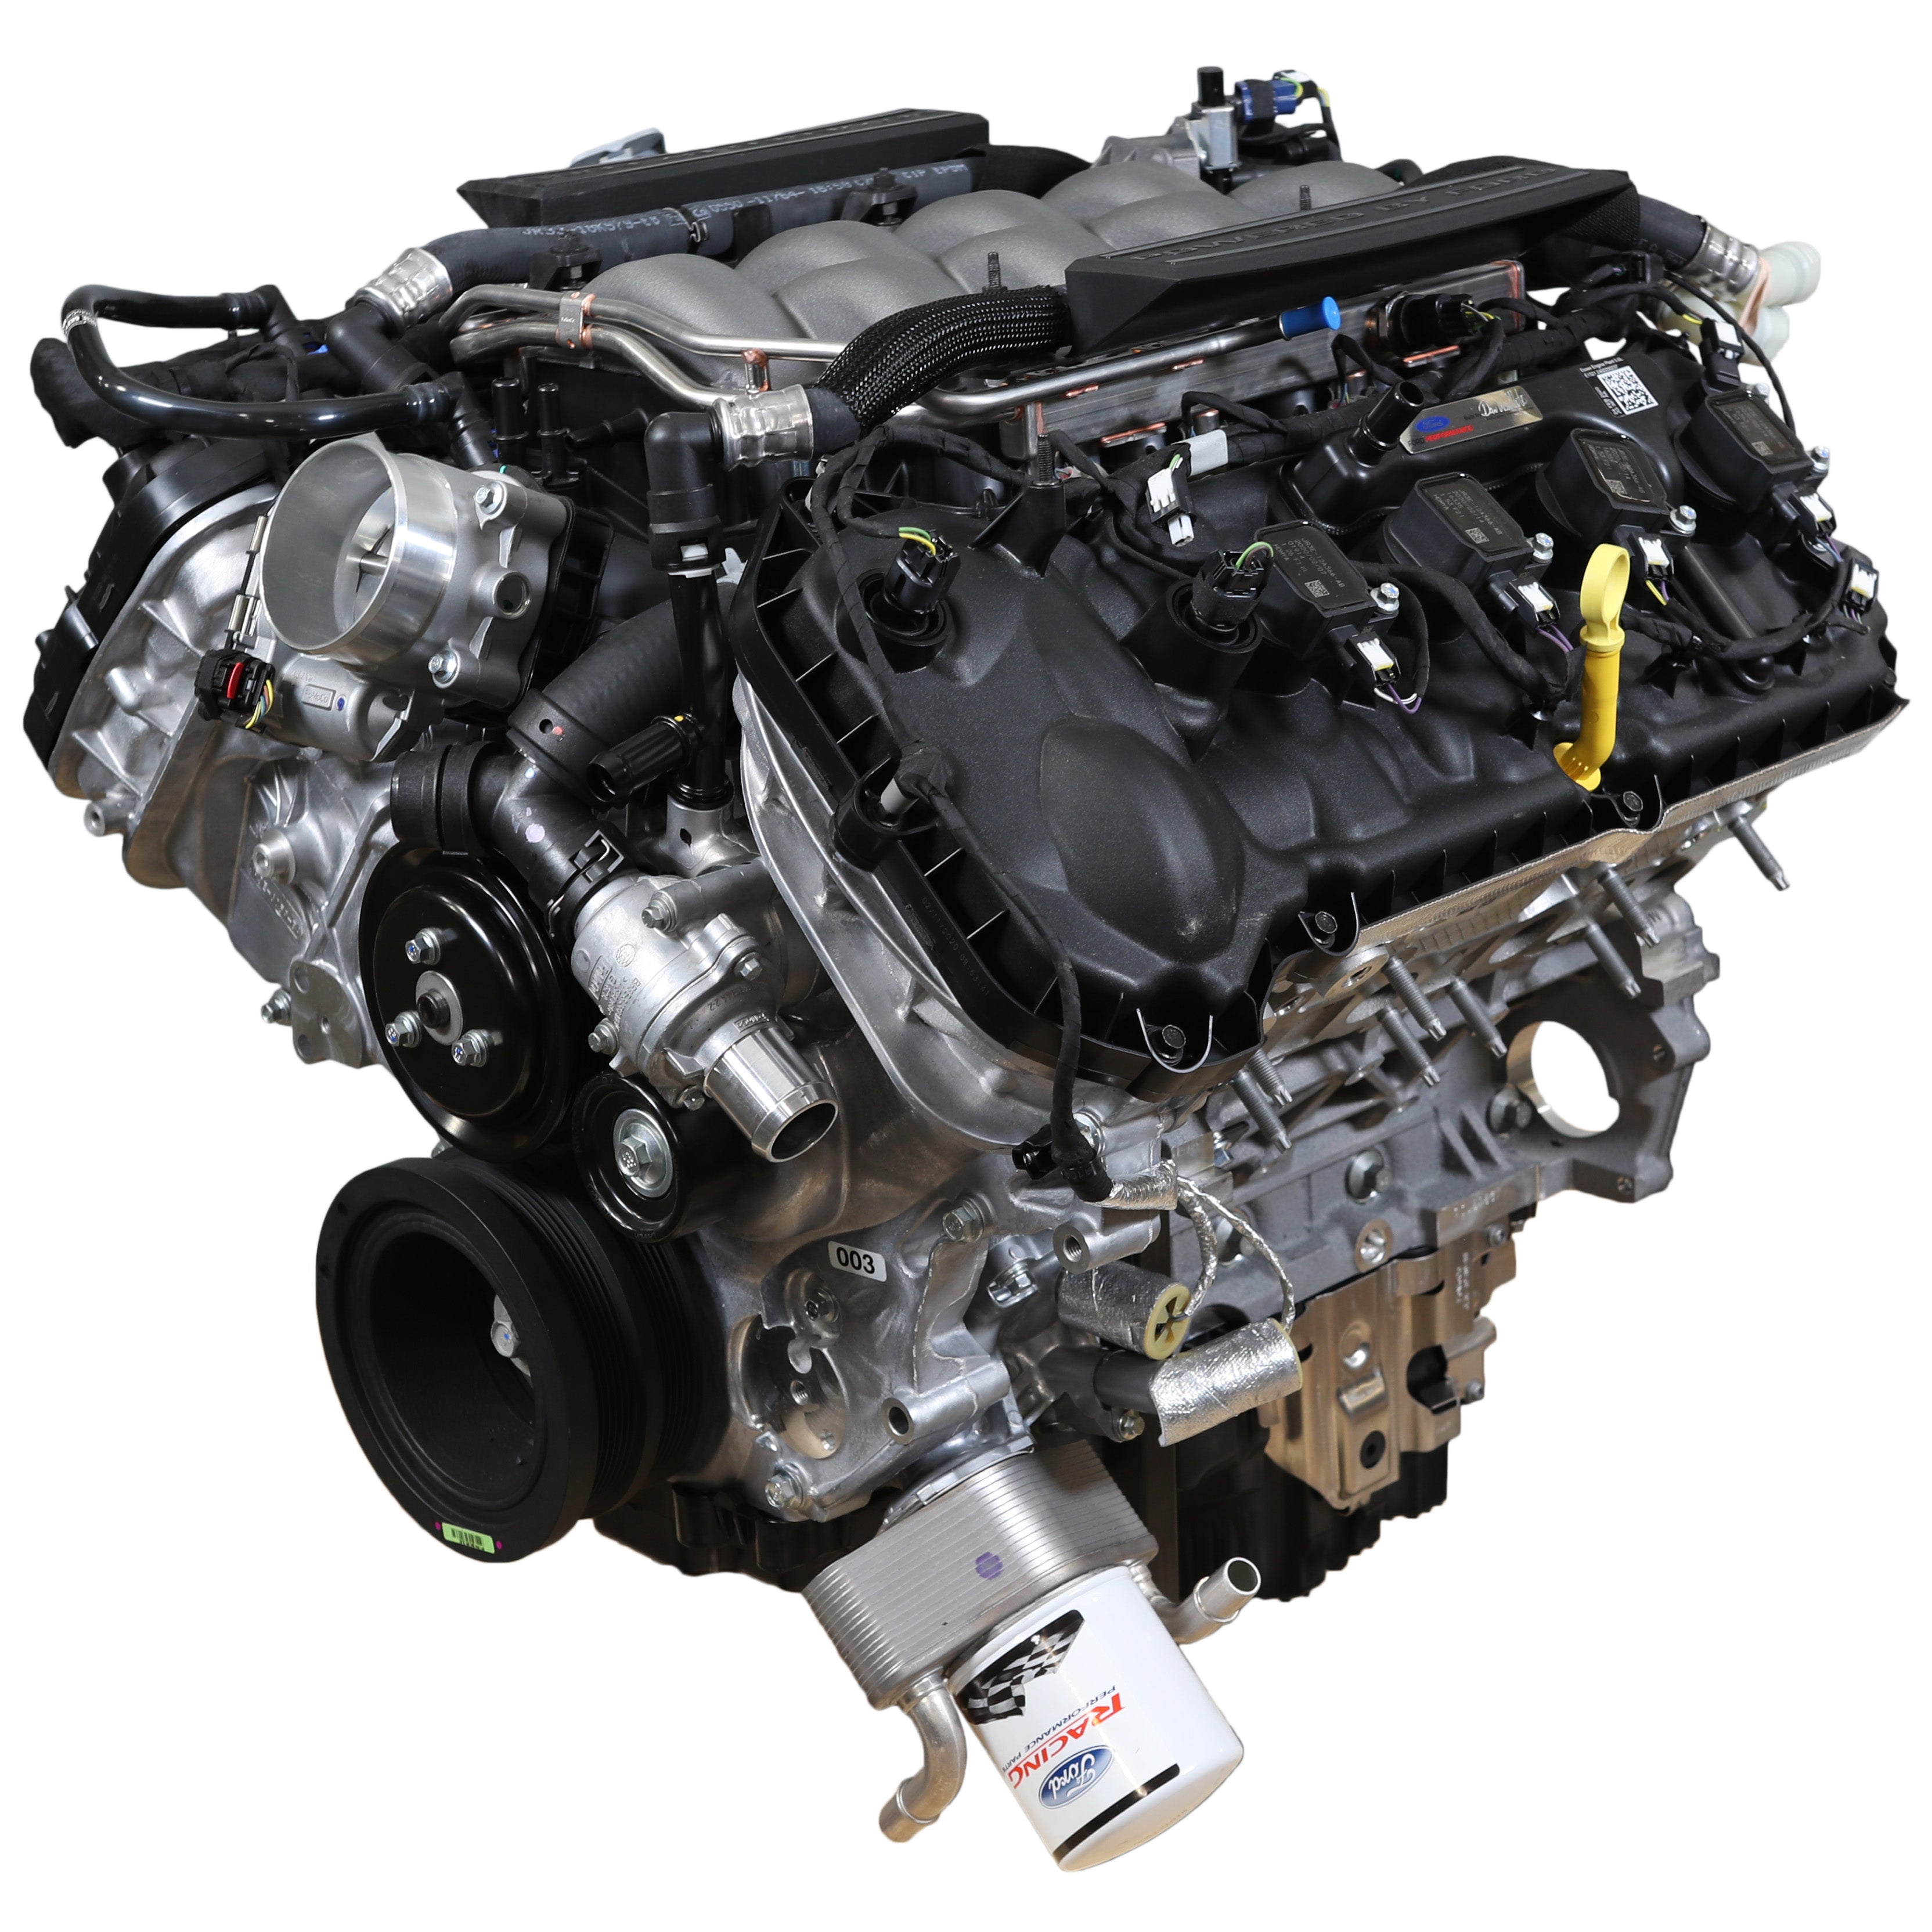 Motor Ford Performance 5.0L "Aluminator" Gen 3 Crate - Baixa Compressão para Construções FI